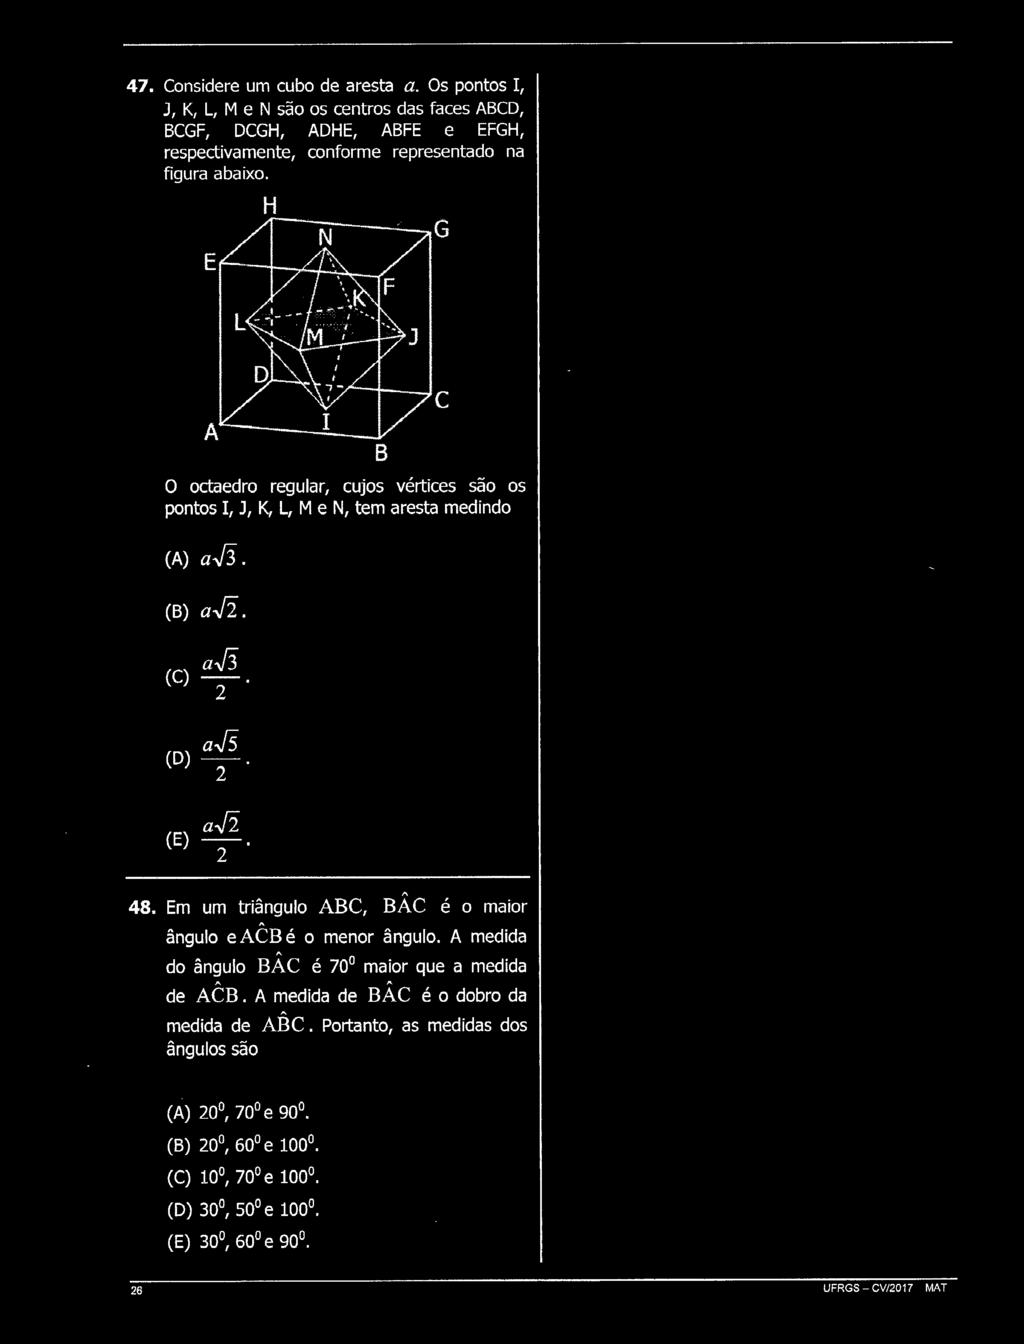 H O octaedro regular, cujos vértices são os pontos I, J, K, L, M e N, tem aresta medindo (A) afi. (B) a..j. (C) aí3. (D) ajs. (E) a..j. 48.